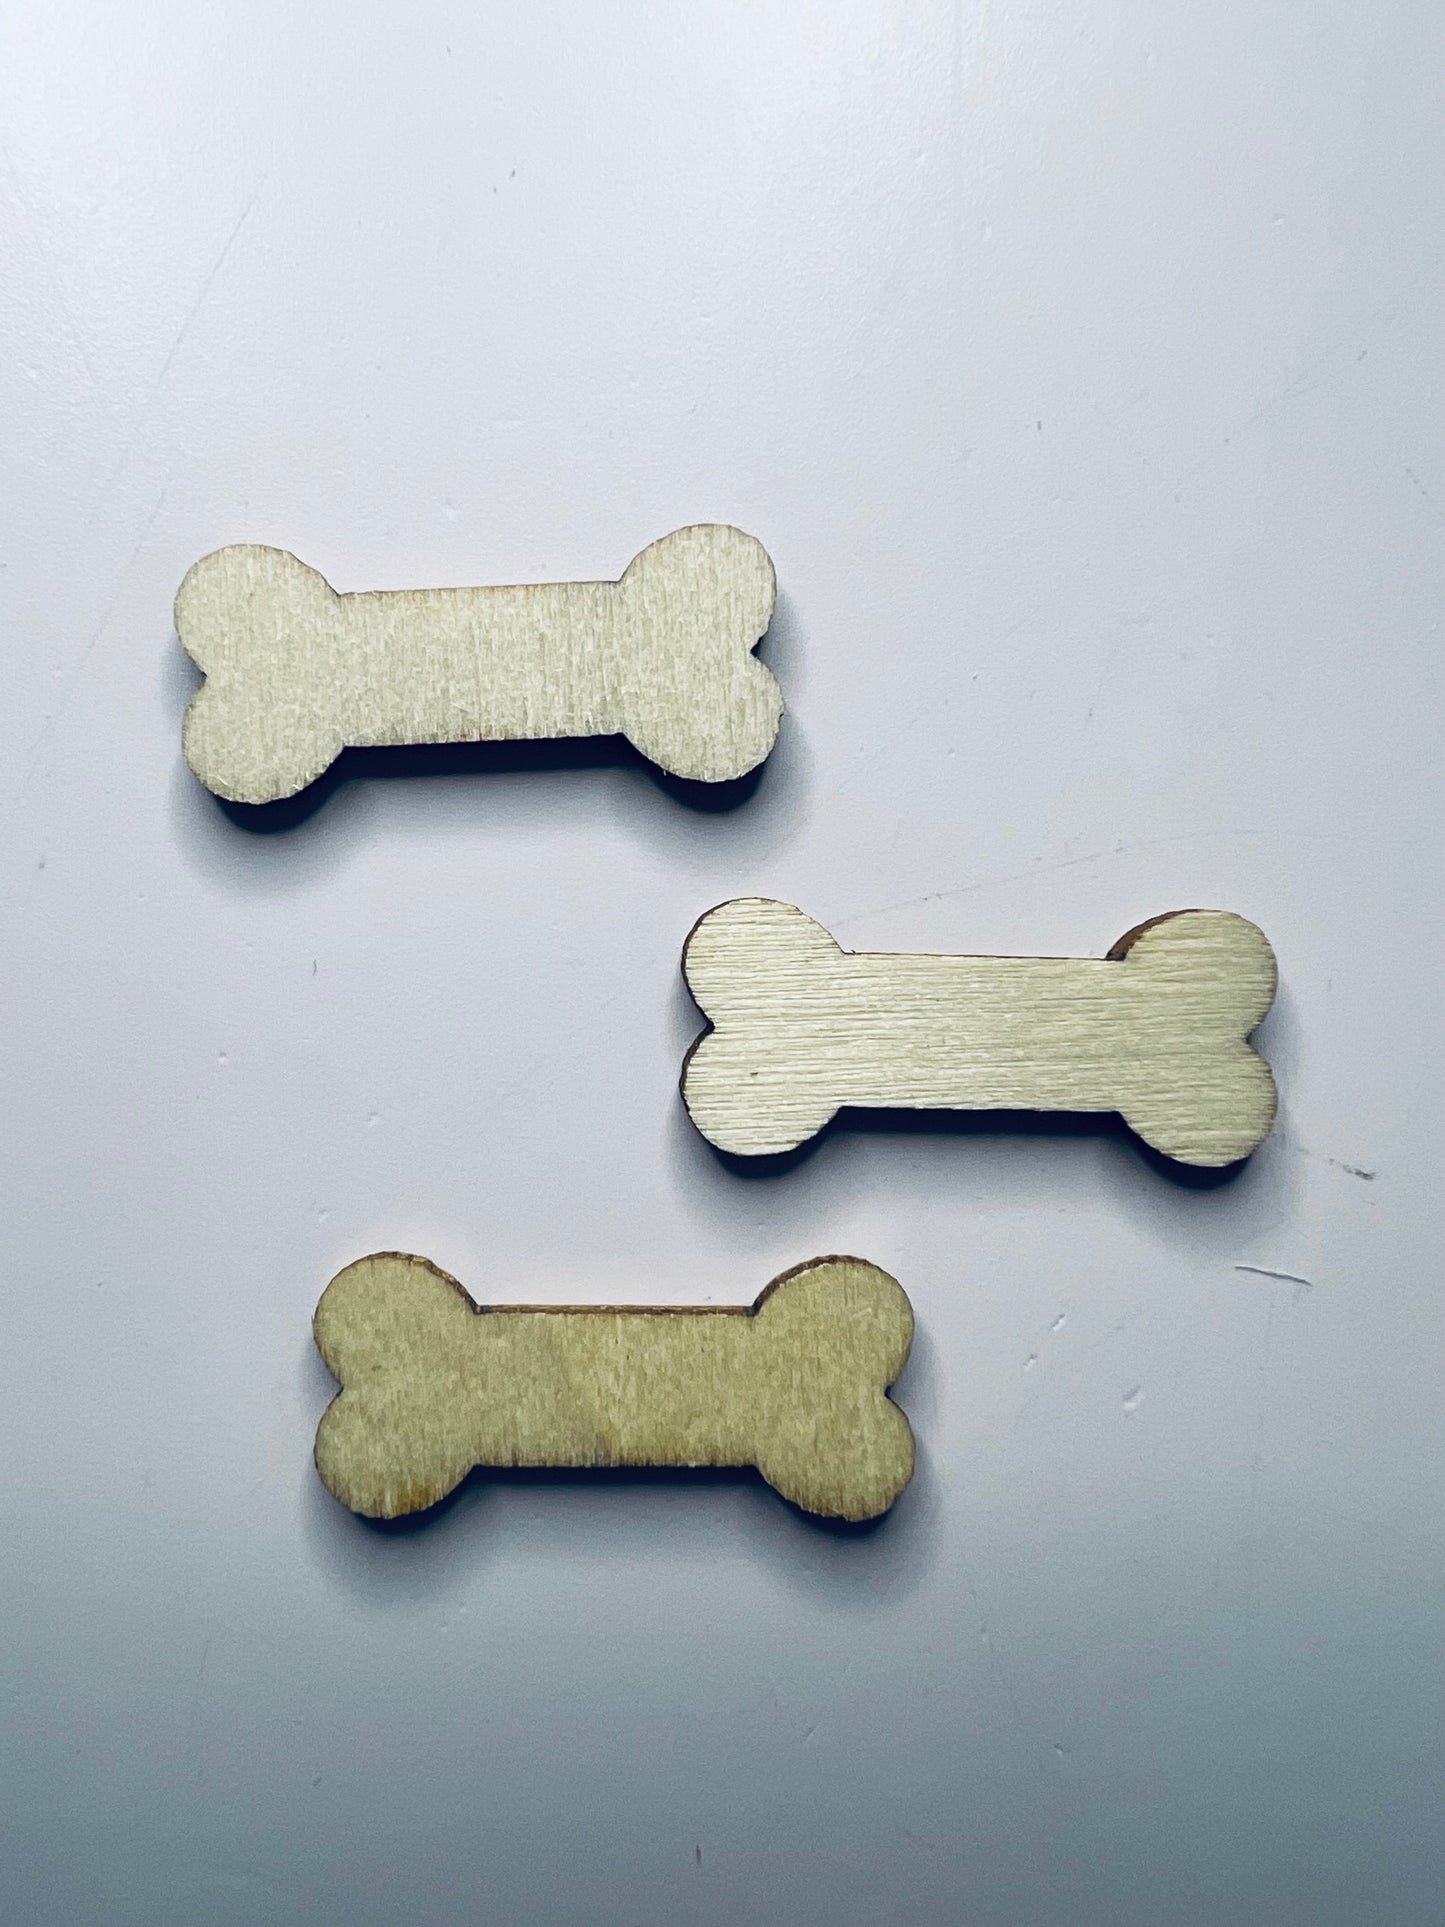 Wood Cut Dog Bones Miniature Dog Bone Trinkets Wood Cut Objects Mini Objects Speech Therapy Dollhouse Miniature Dog Bones